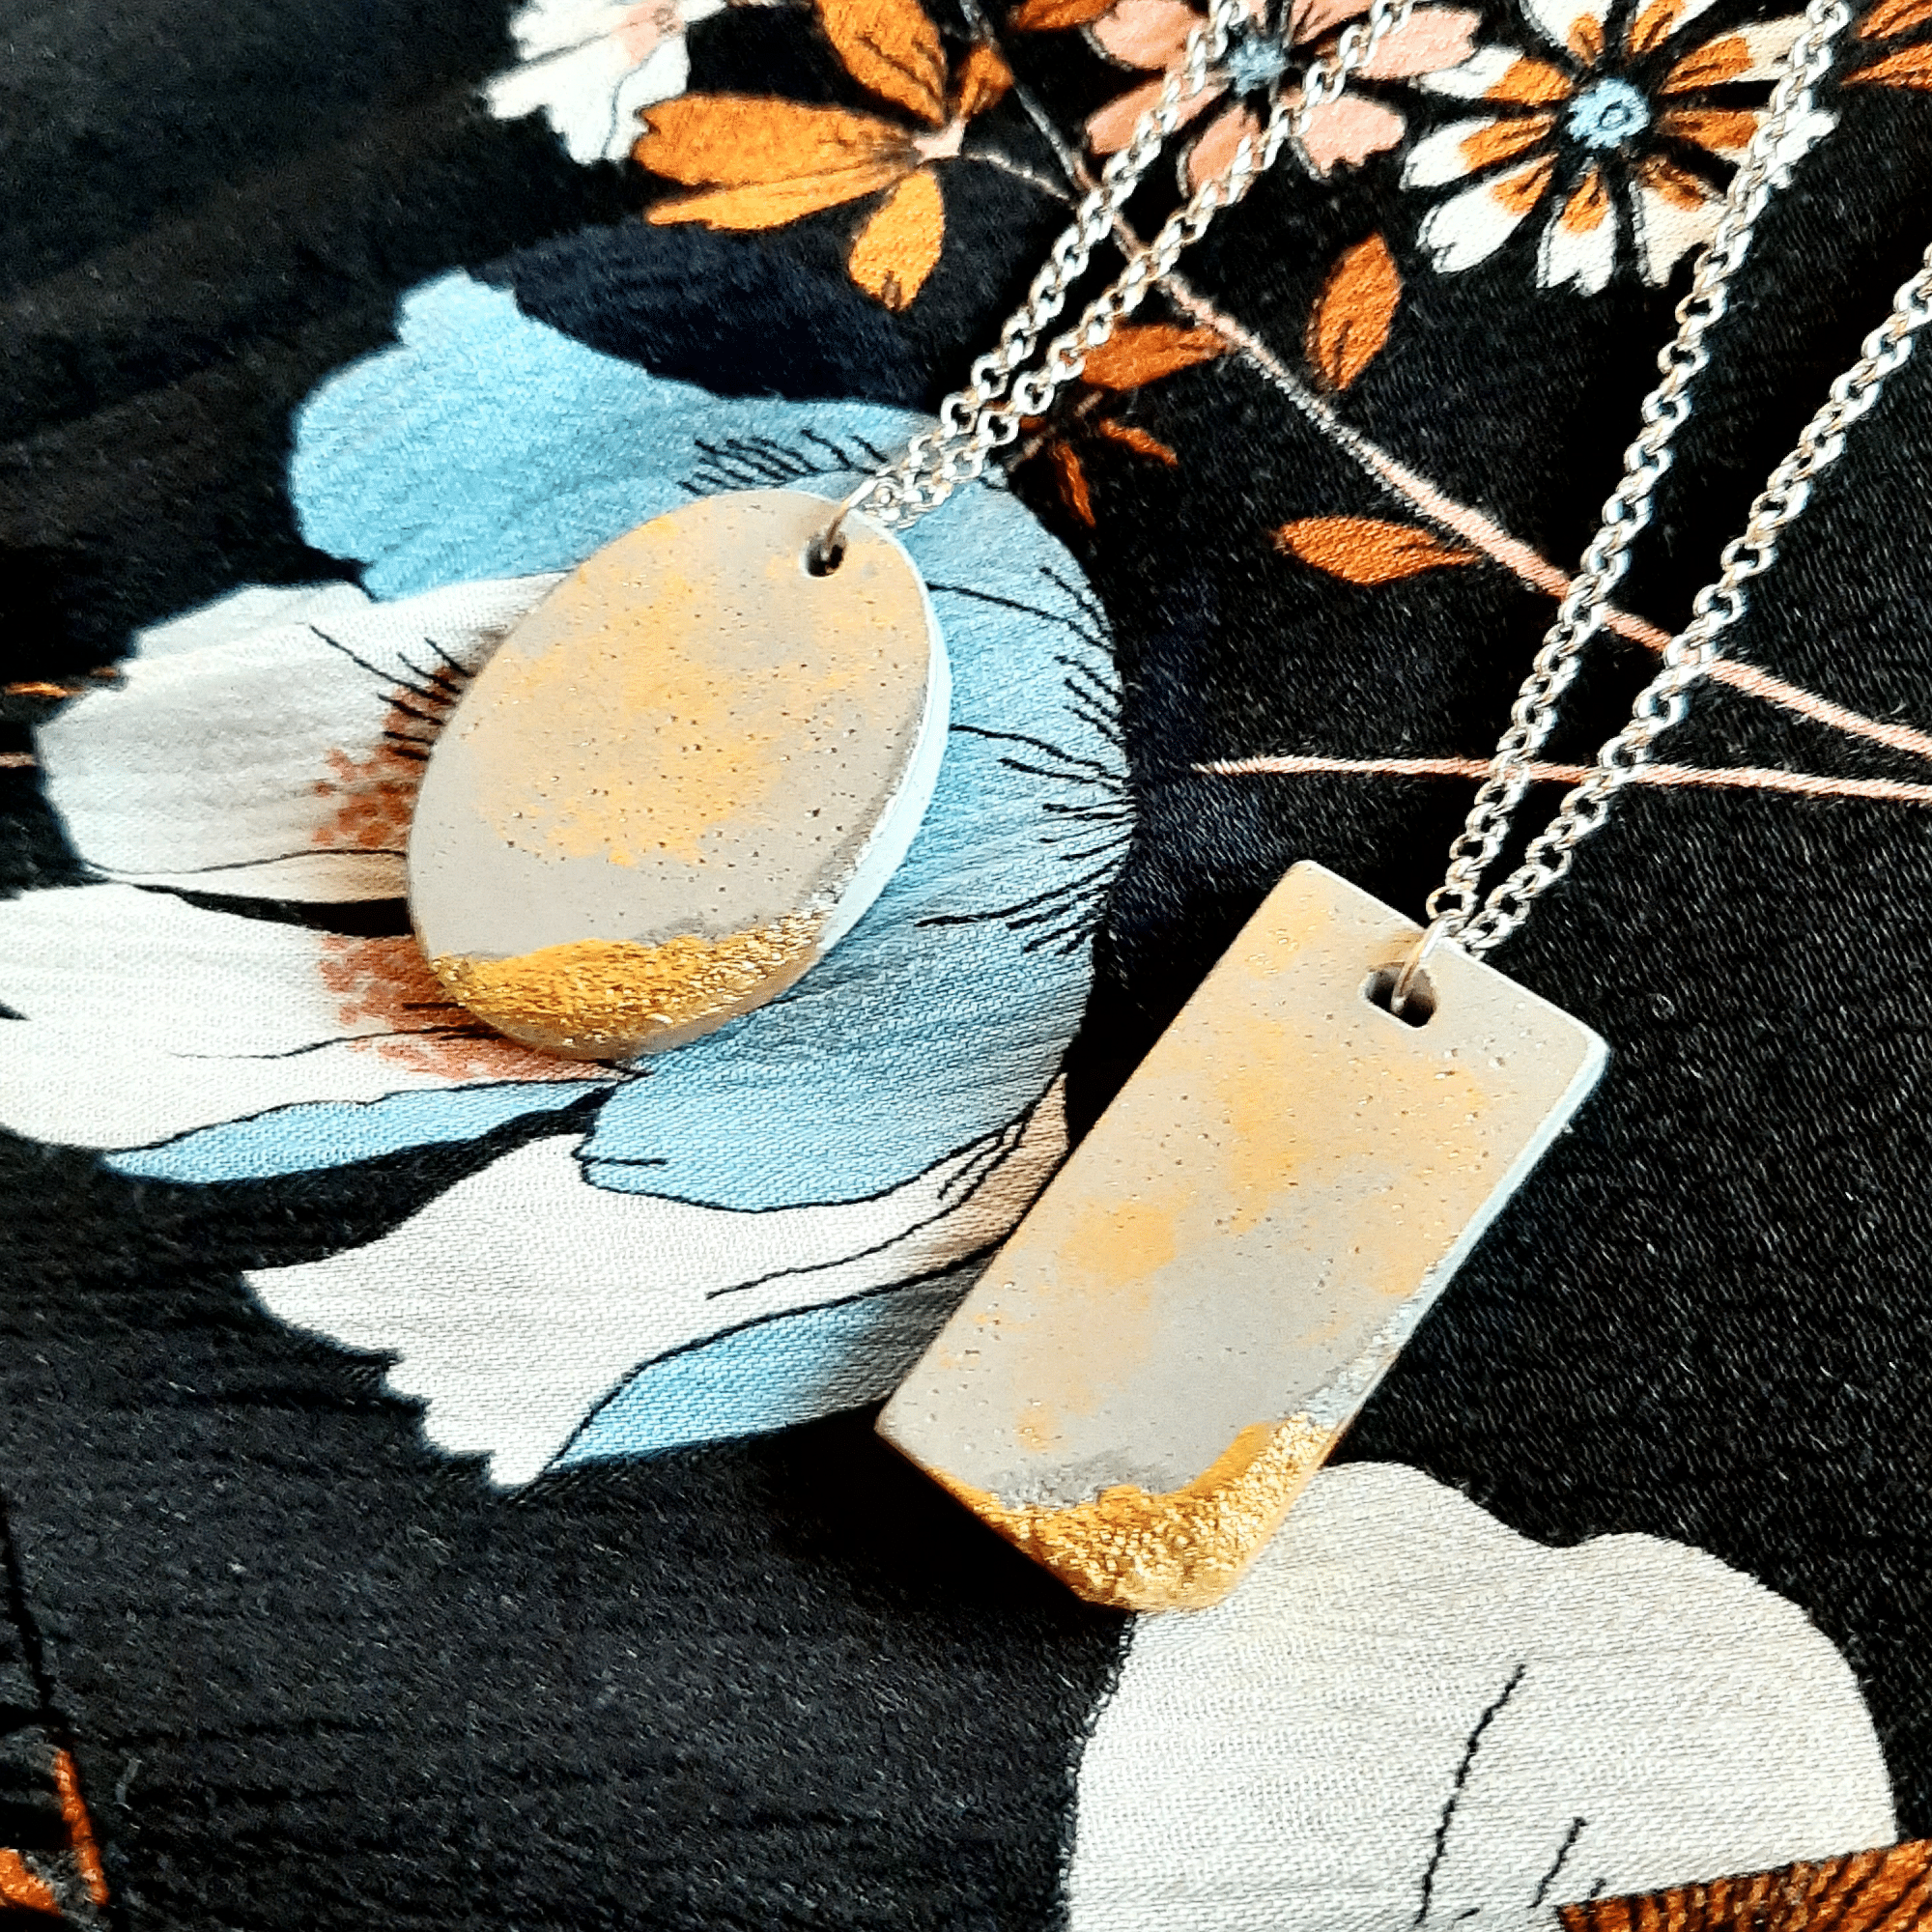 Shop Handmade Minimalist Style Concrete Gold Smudged Pendant Necklace, Necklaces, USA Boutique